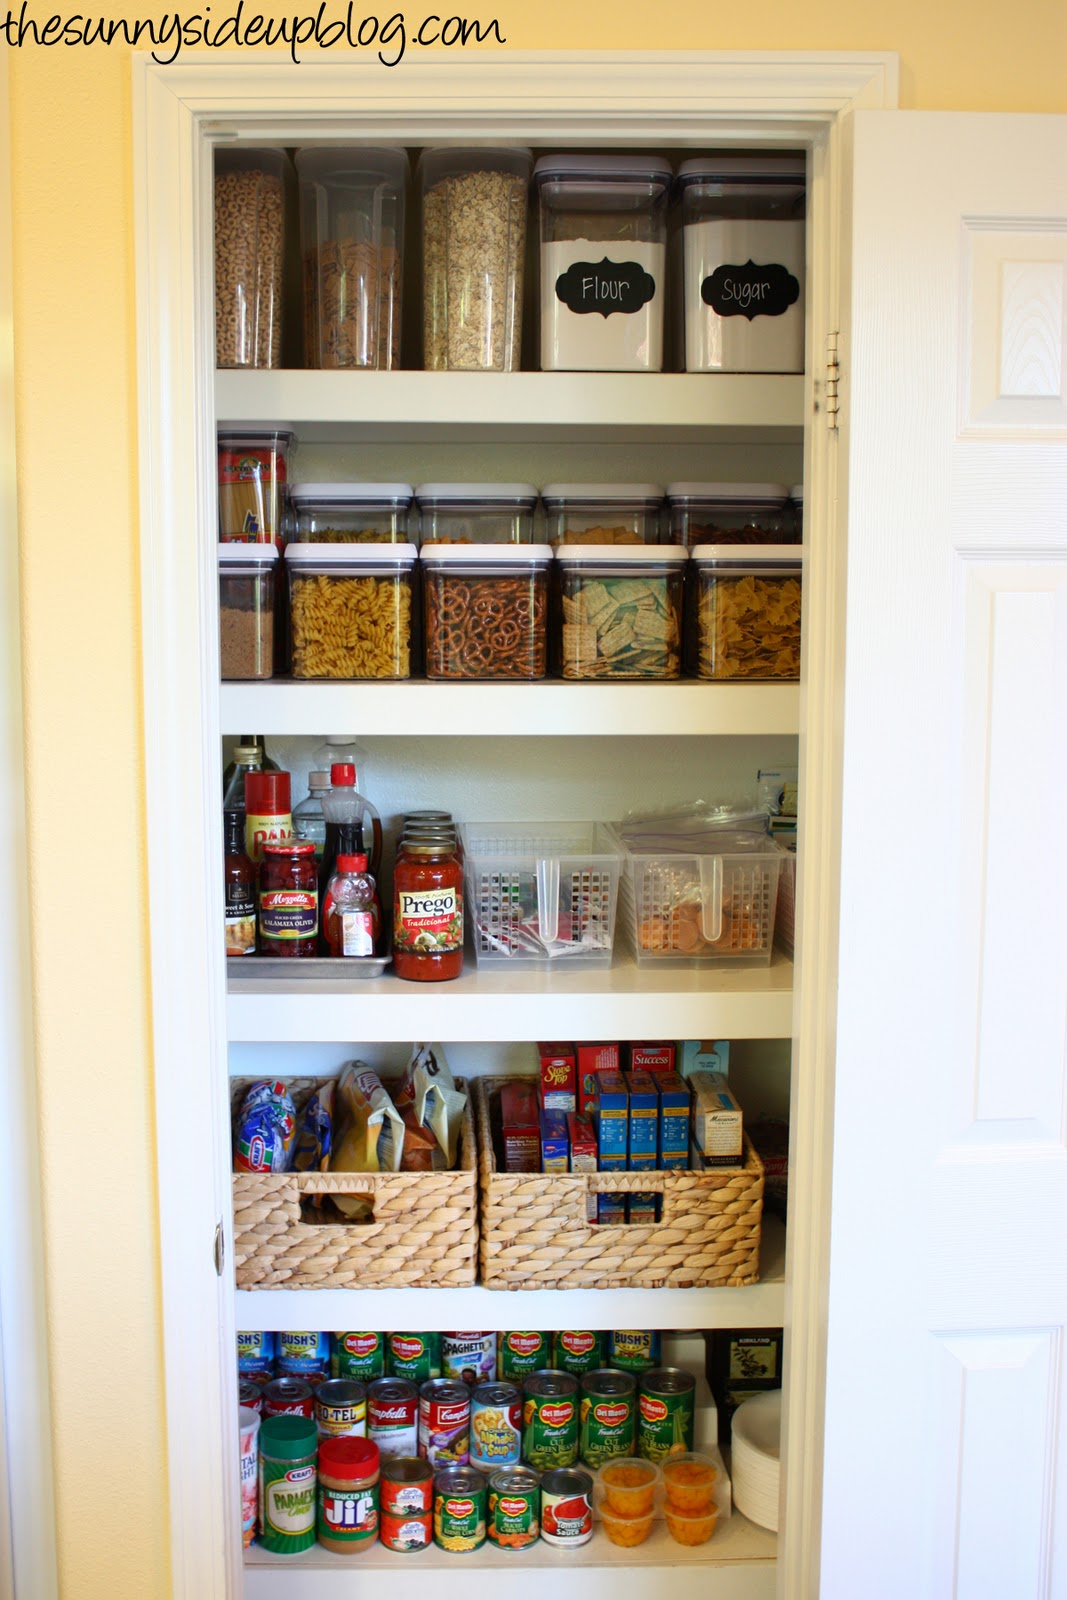 Let's Get Organized - Small Kitchen Organizer & Storage Ideas